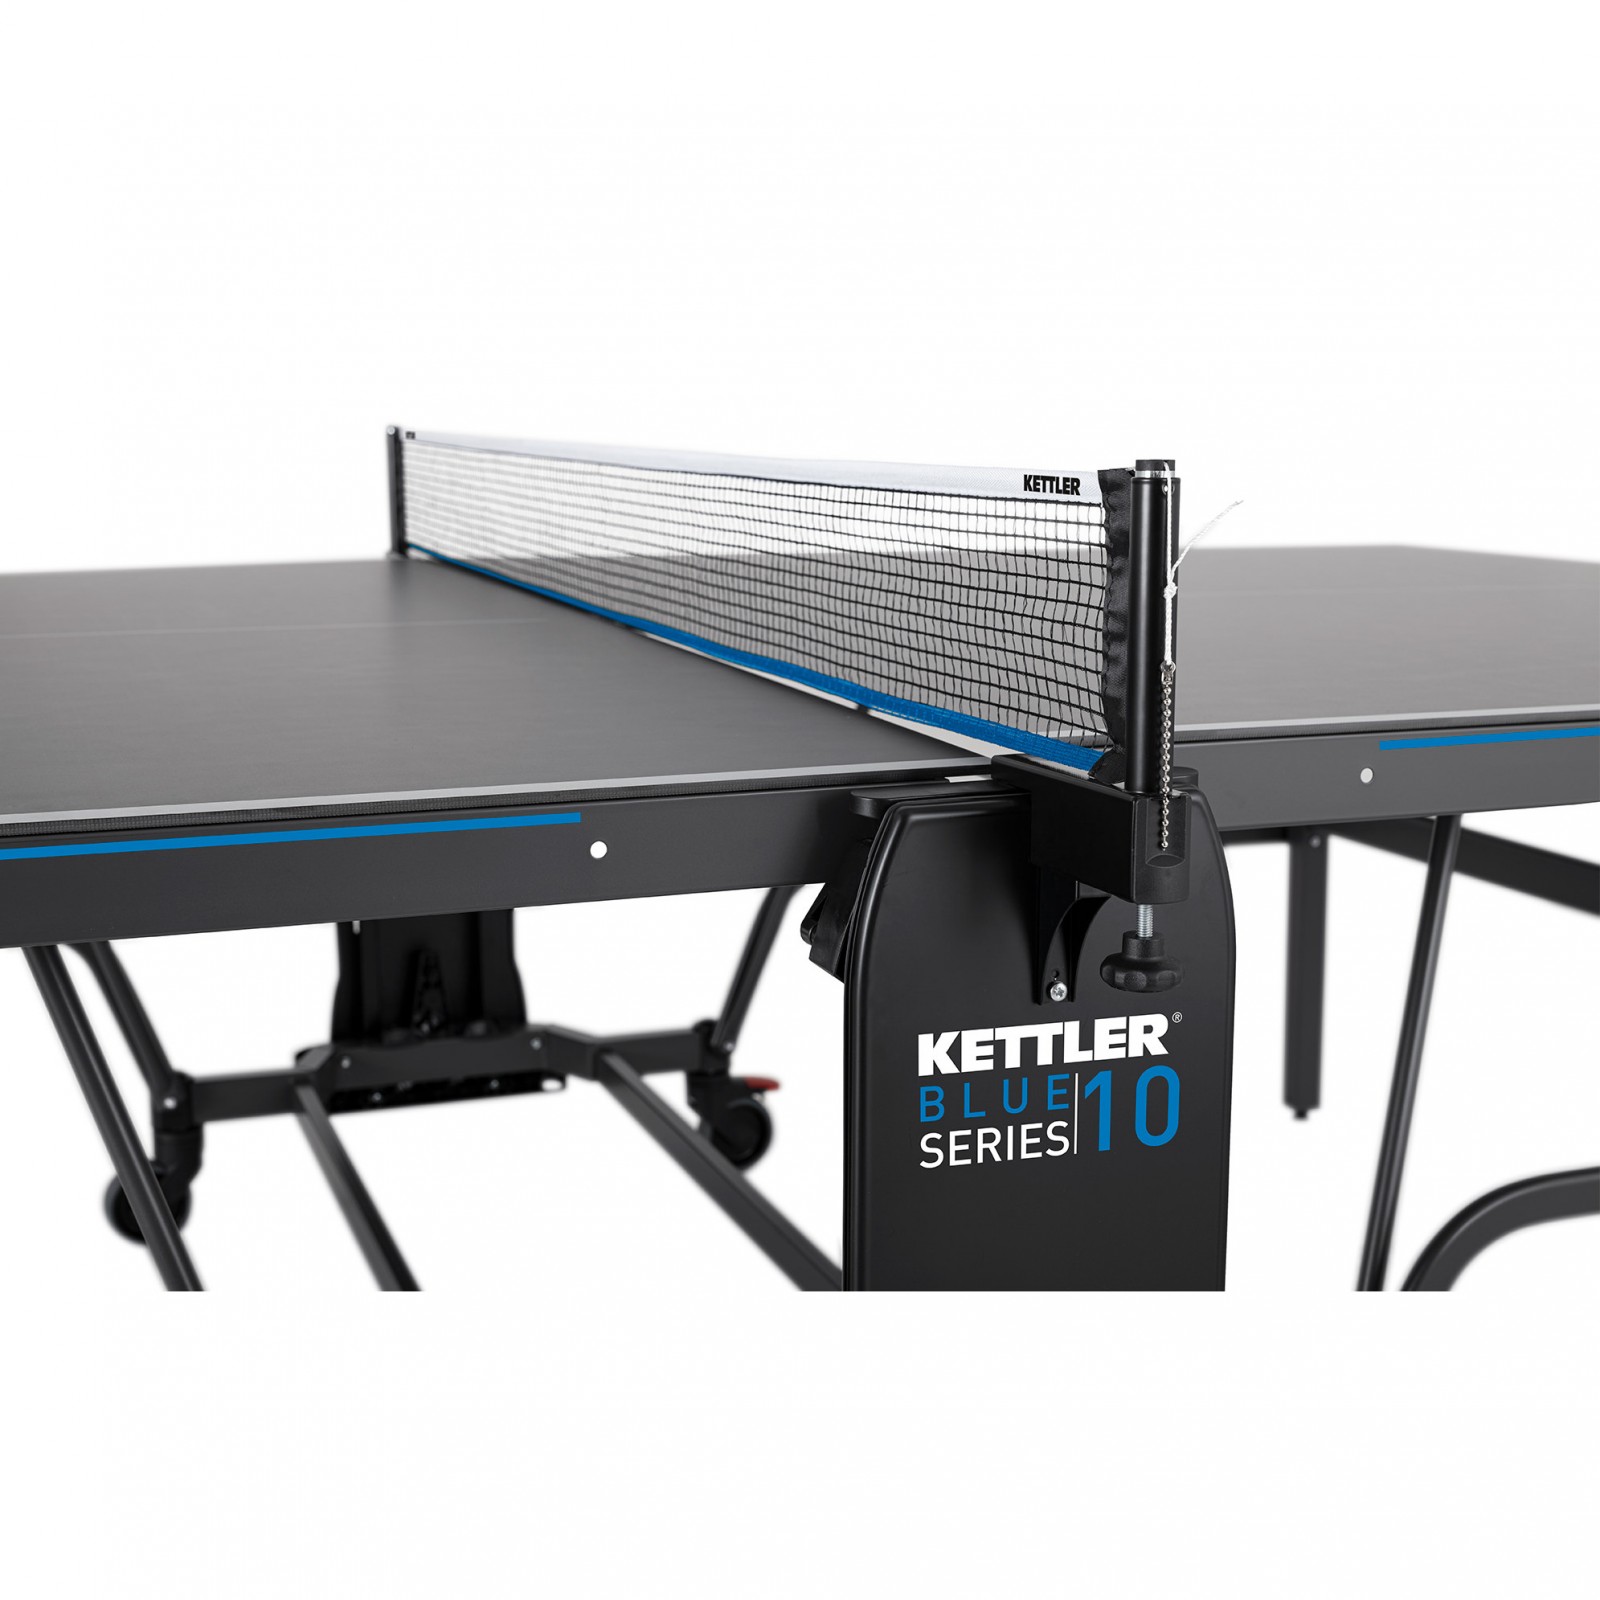 Стол для настольного тенниса Кетлер. Kettler Outdoor теннисный стол. Стол для пинг понга Kettler. Kettler Outdoor 10. Теннисного кетлер